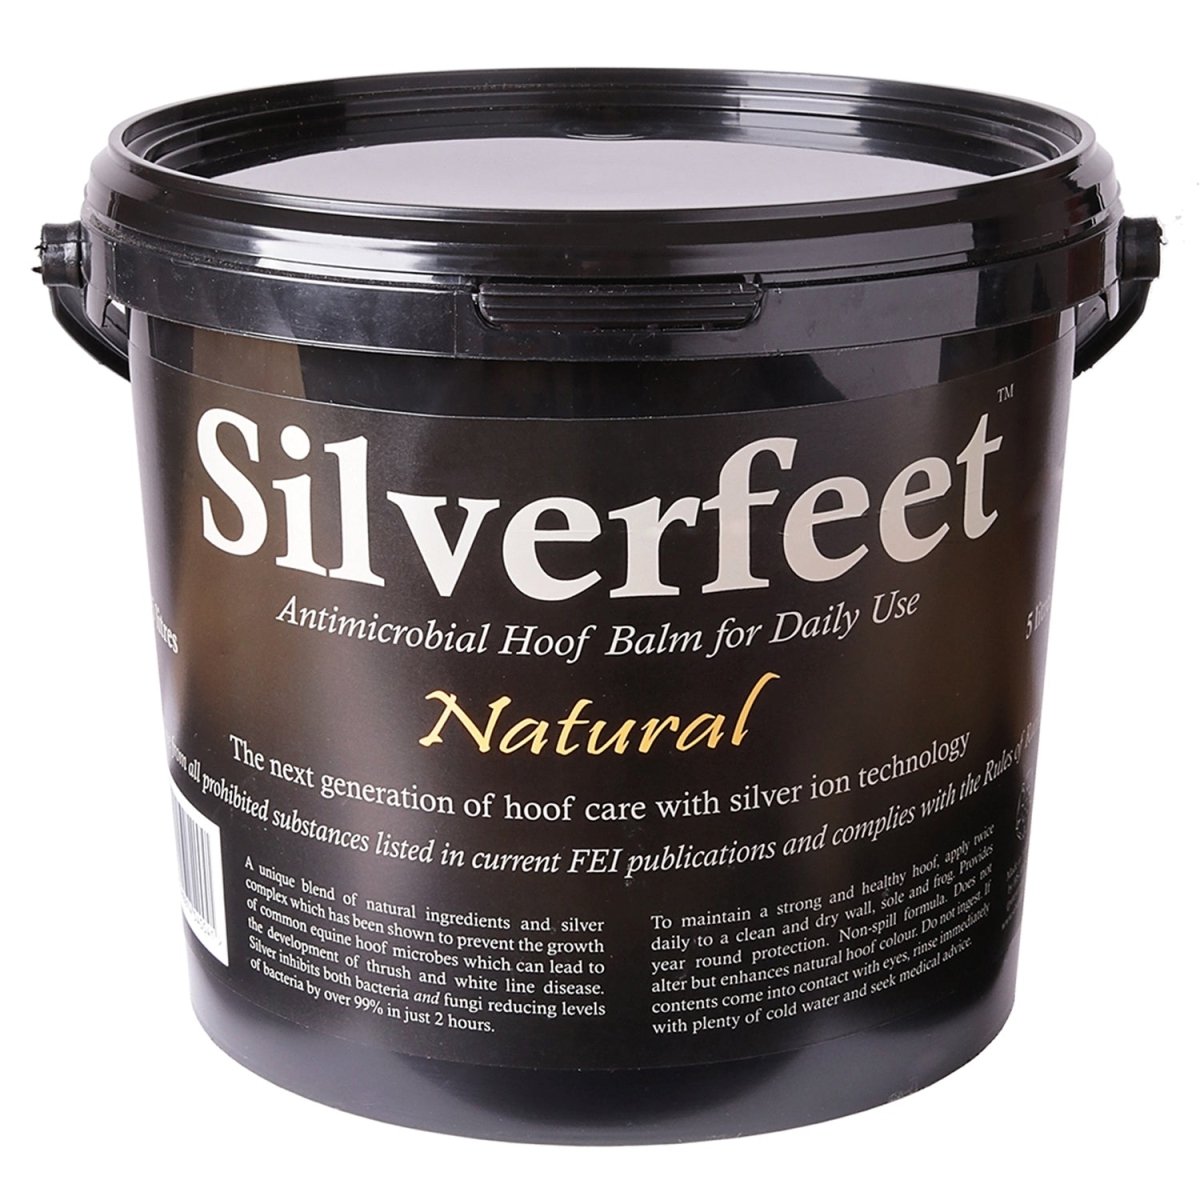 Silverfeet Hoof Balm Natural - Natural - 5Lt